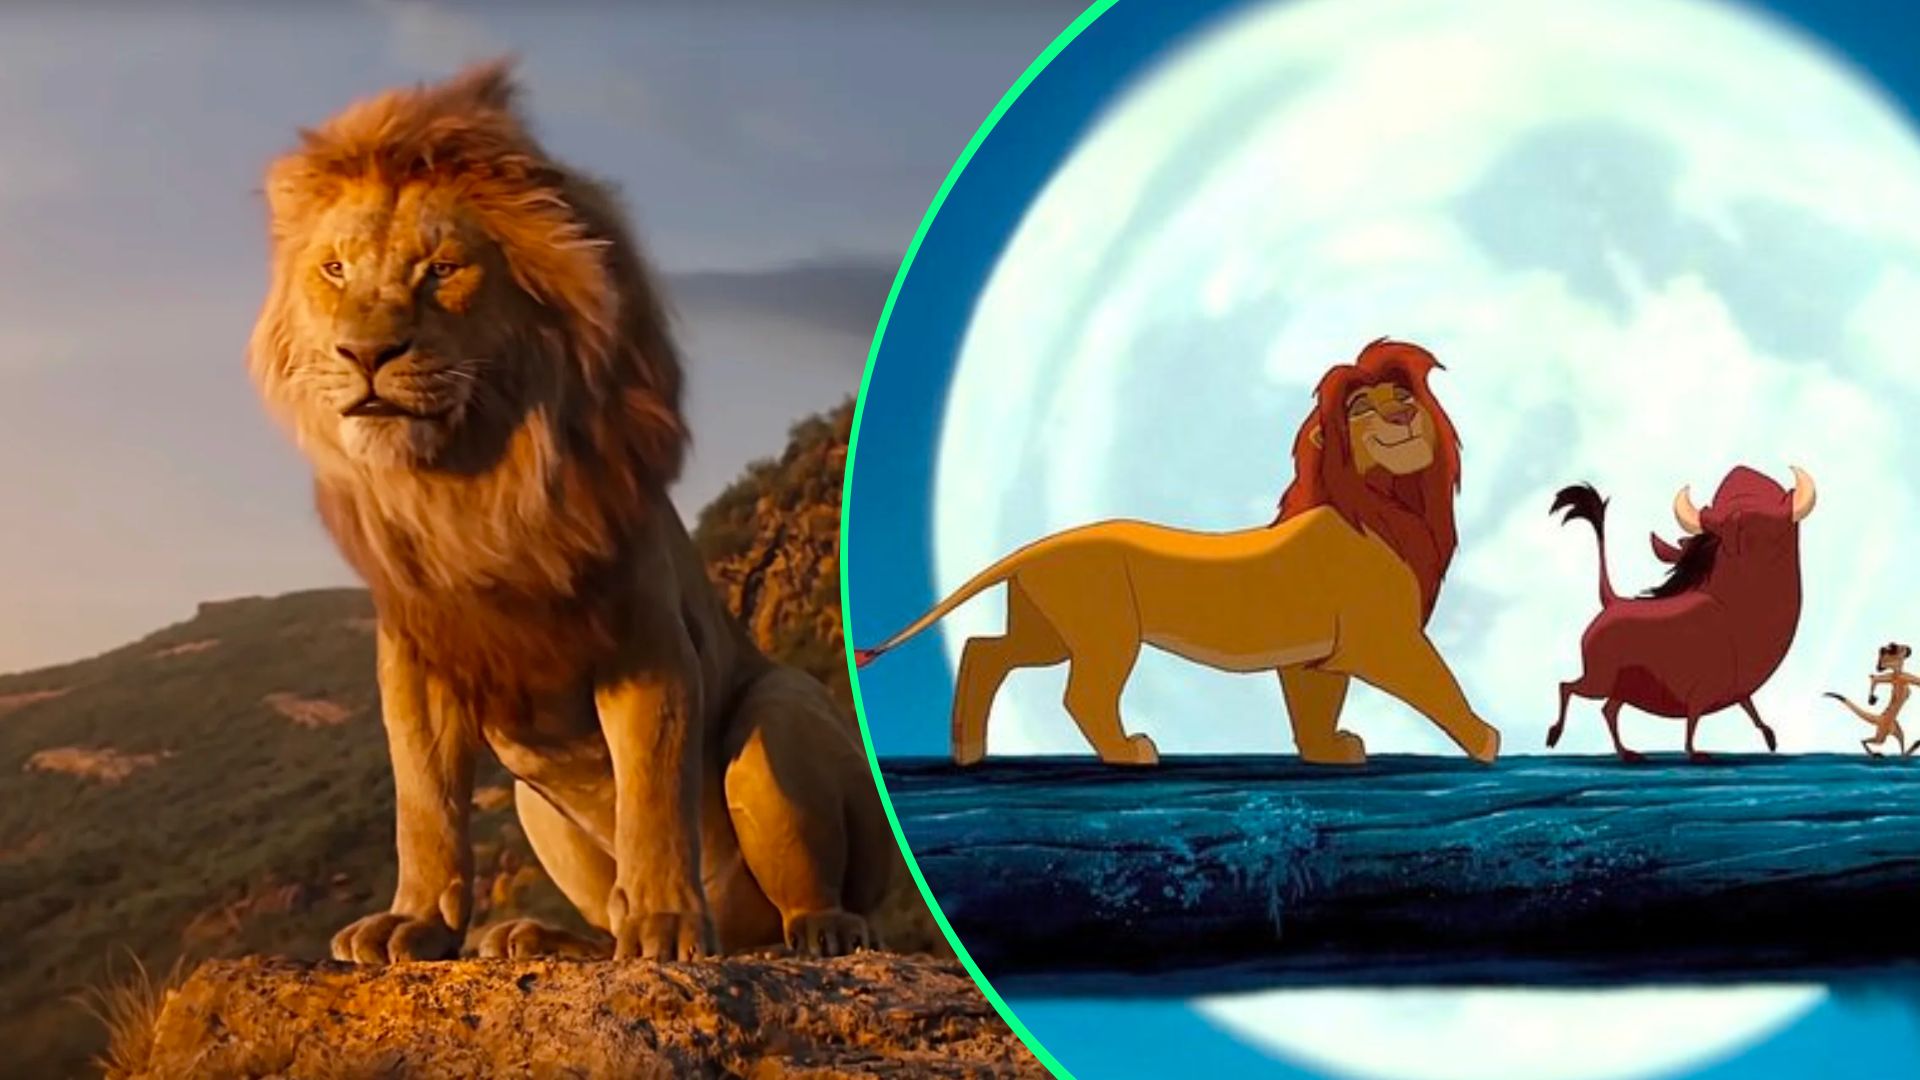 El Rey León 2019: lo que debes saber, Disney